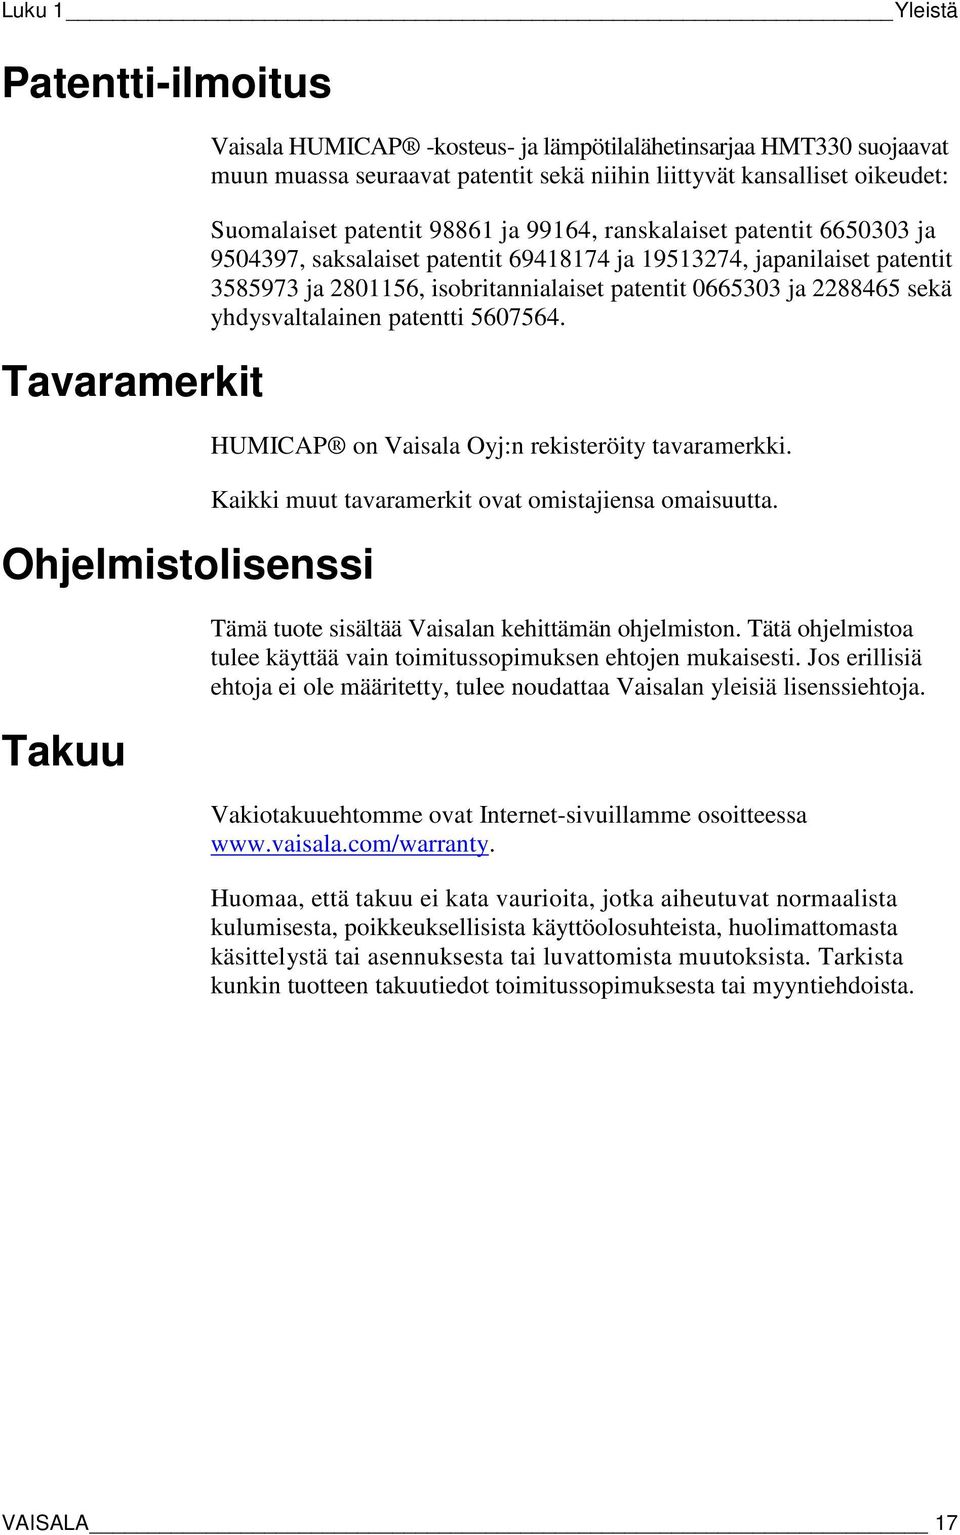 isobritannialaiset patentit 0665303 ja 2288465 sekä yhdysvaltalainen patentti 5607564. HUMICAP on Vaisala Oyj:n rekisteröity tavaramerkki. Kaikki muut tavaramerkit ovat omistajiensa omaisuutta.